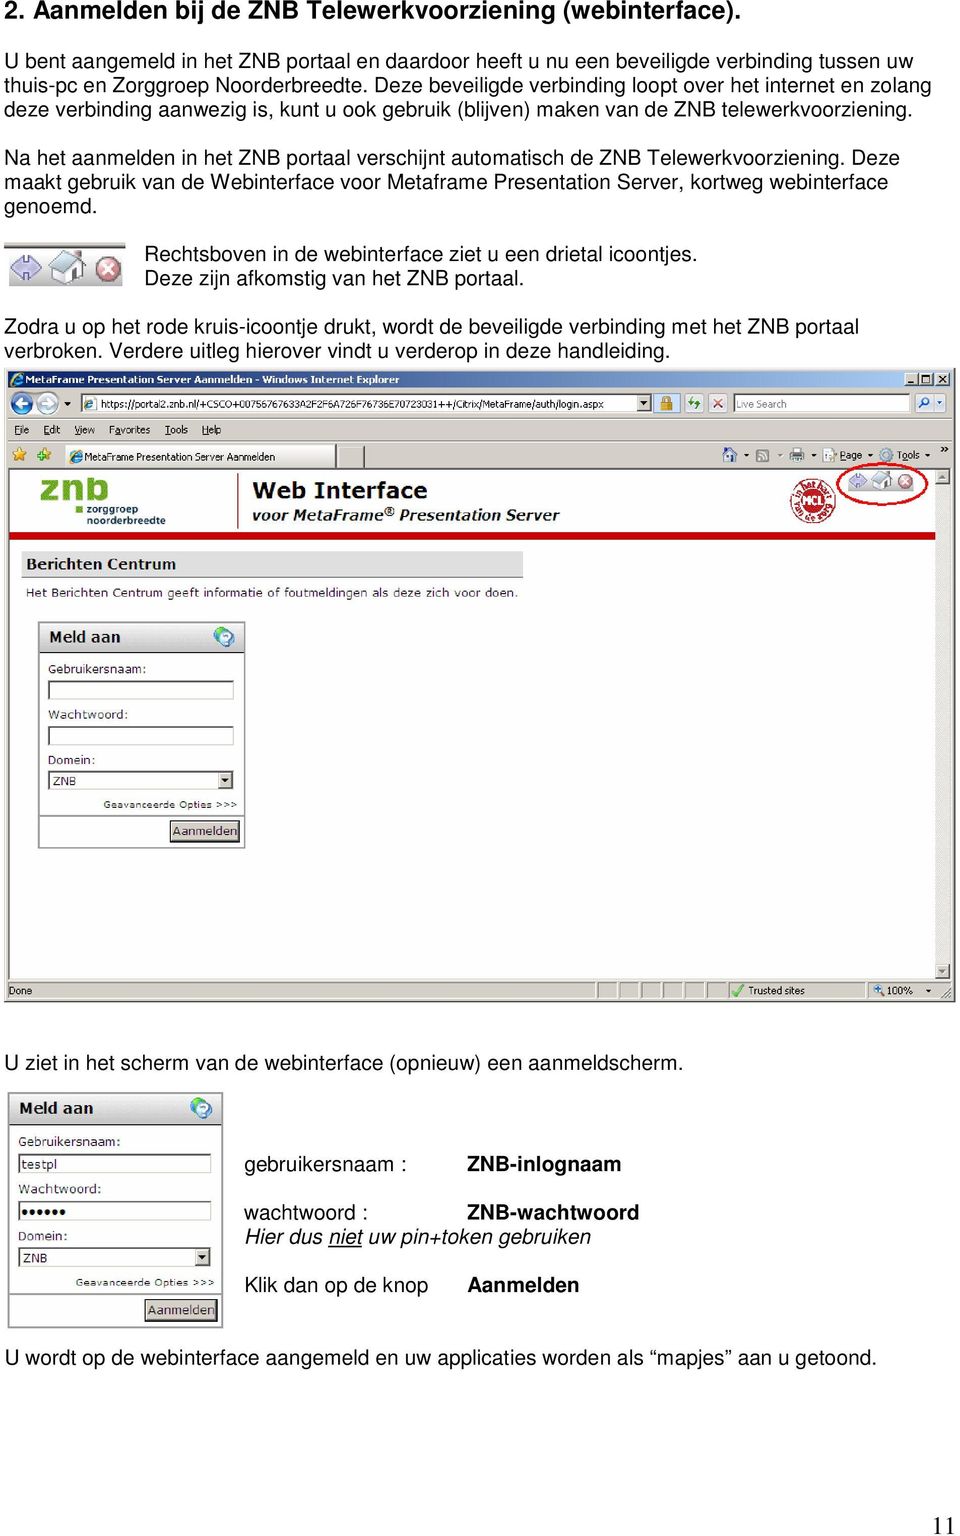 Na het aanmelden in het ZNB portaal verschijnt automatisch de ZNB Telewerkvoorziening. Deze maakt gebruik van de Webinterface voor Metaframe Presentation Server, kortweg webinterface genoemd.